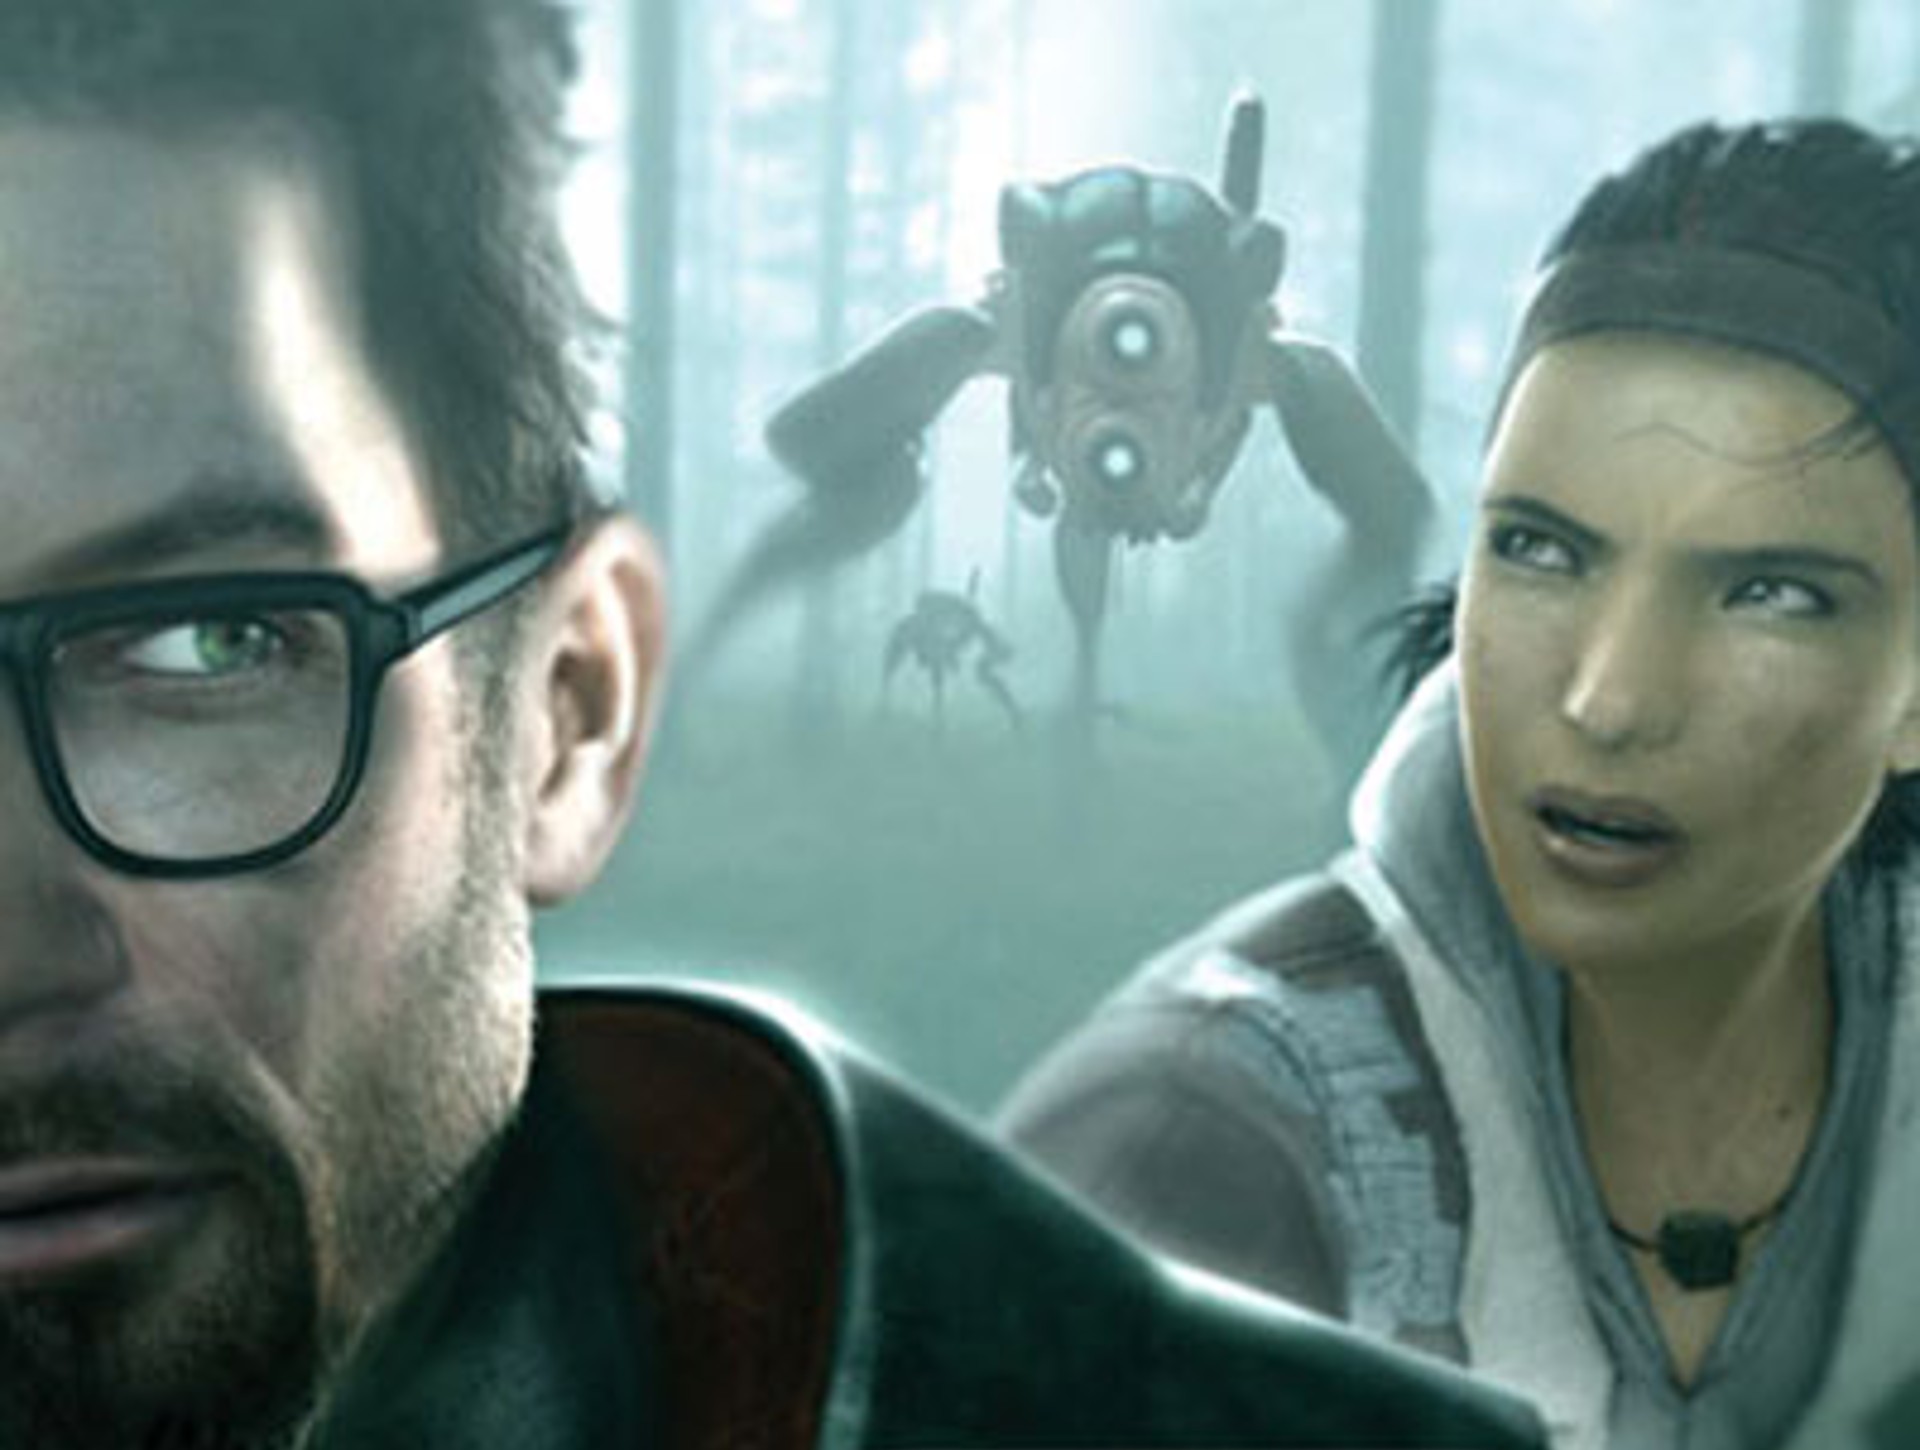 แฟนตัวยง Valve ปล่อยภาพคอนเซ็ปต์อาร์ตหาชมยากของ Half-Life 2: Episode Three ที่ถูกยกเลิกพัฒนา